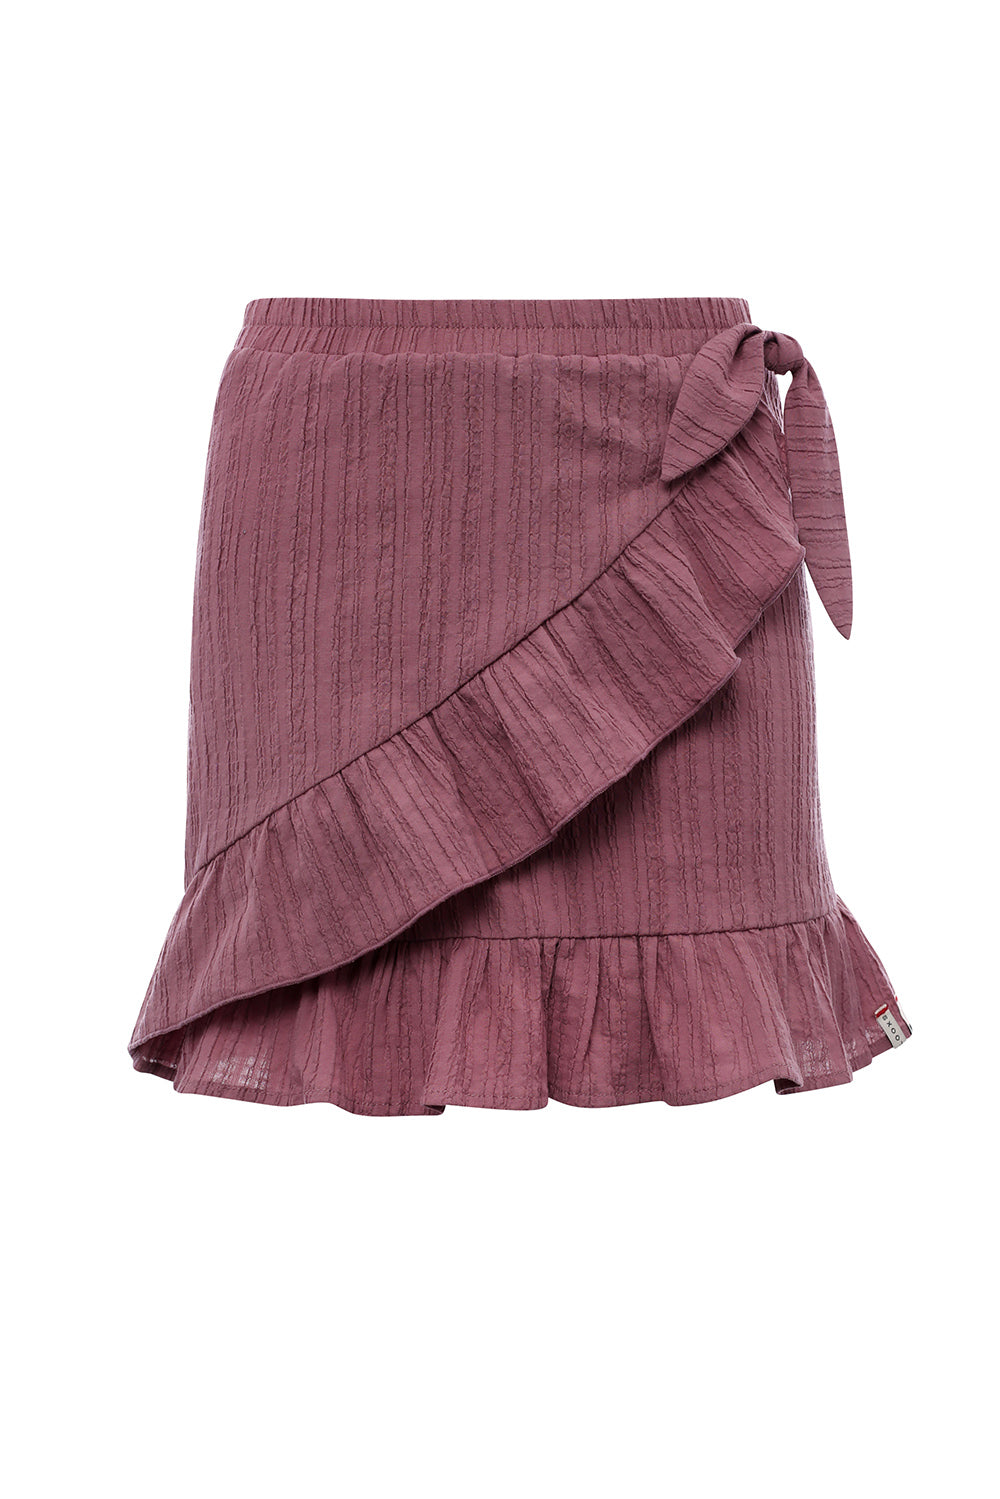 LOOXS Little Woven Crinckle Skirt